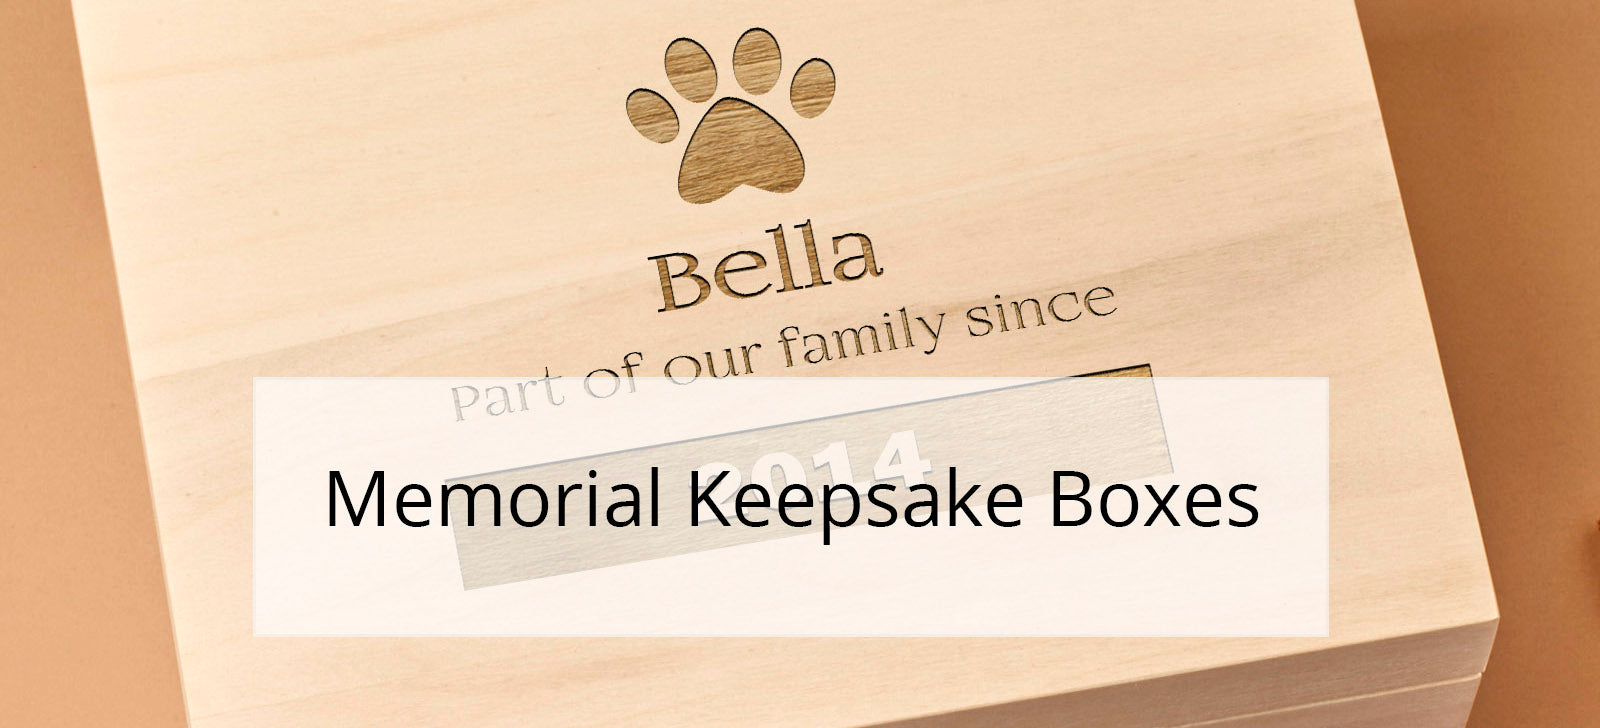 Pet Memorial Keepsake Boxes